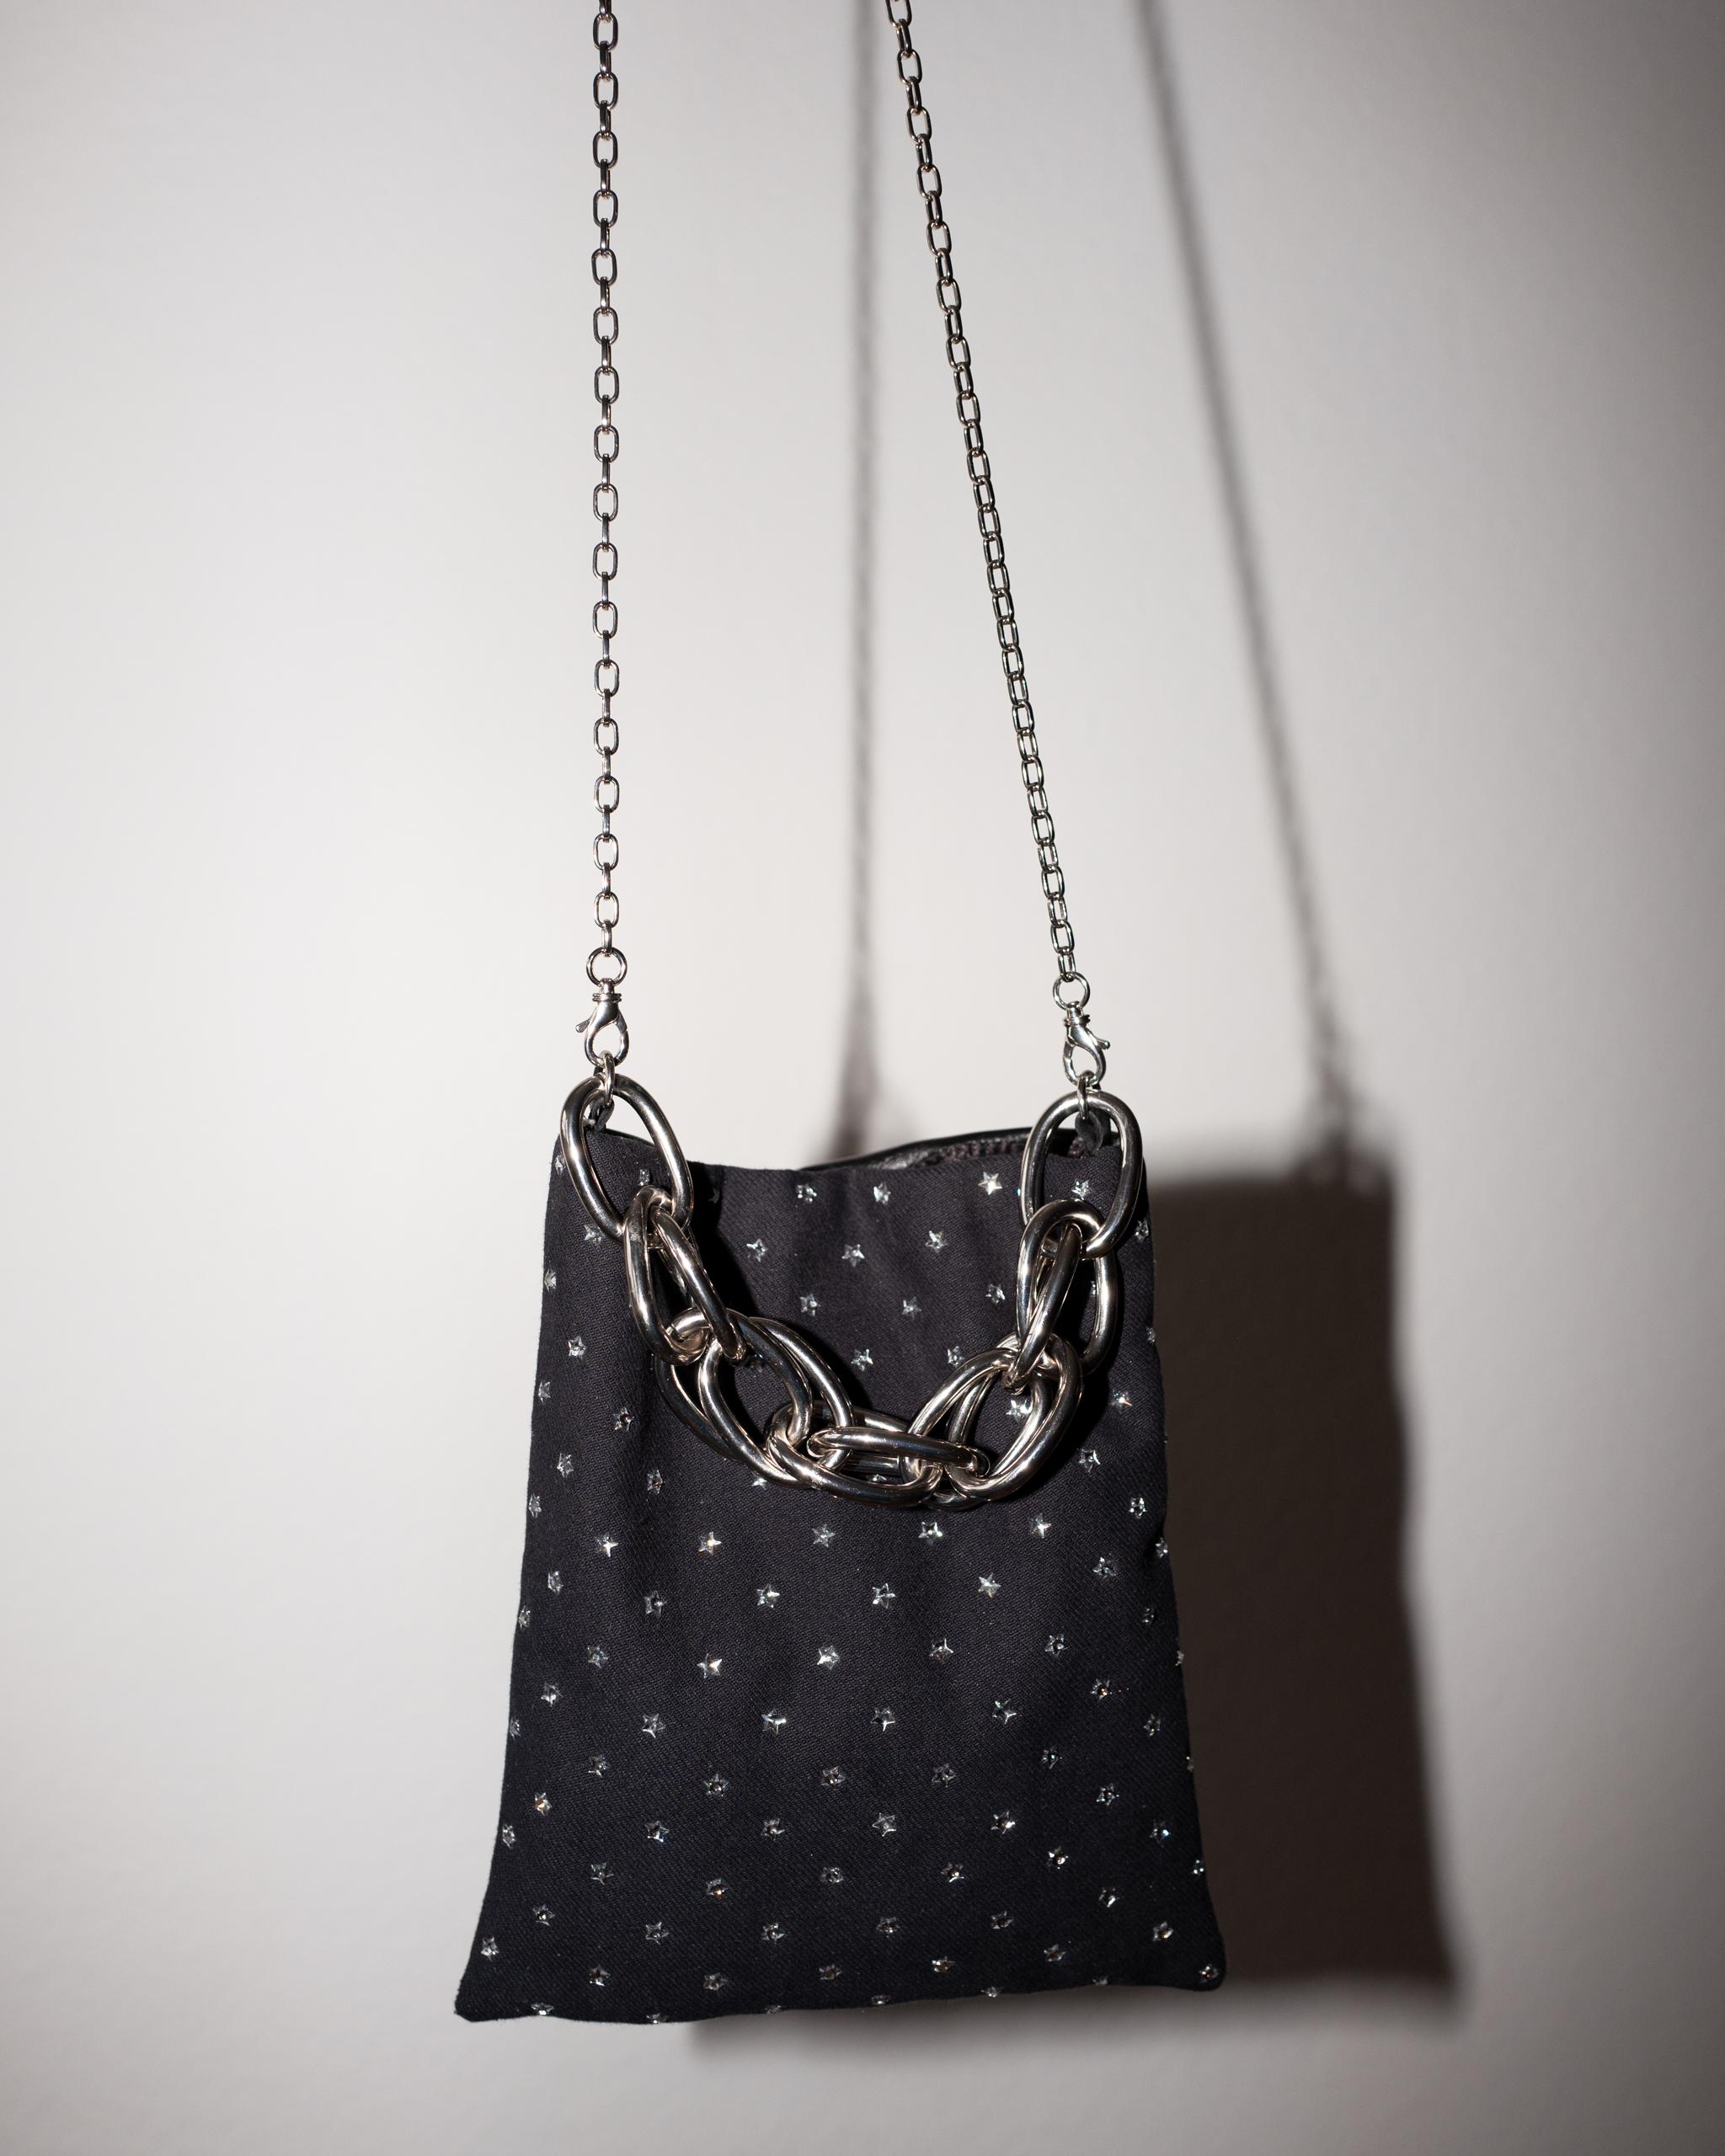 Women's Crystal Star Embellished Black Evening Shoulder Bag Black Leather Chunky Chain For Sale